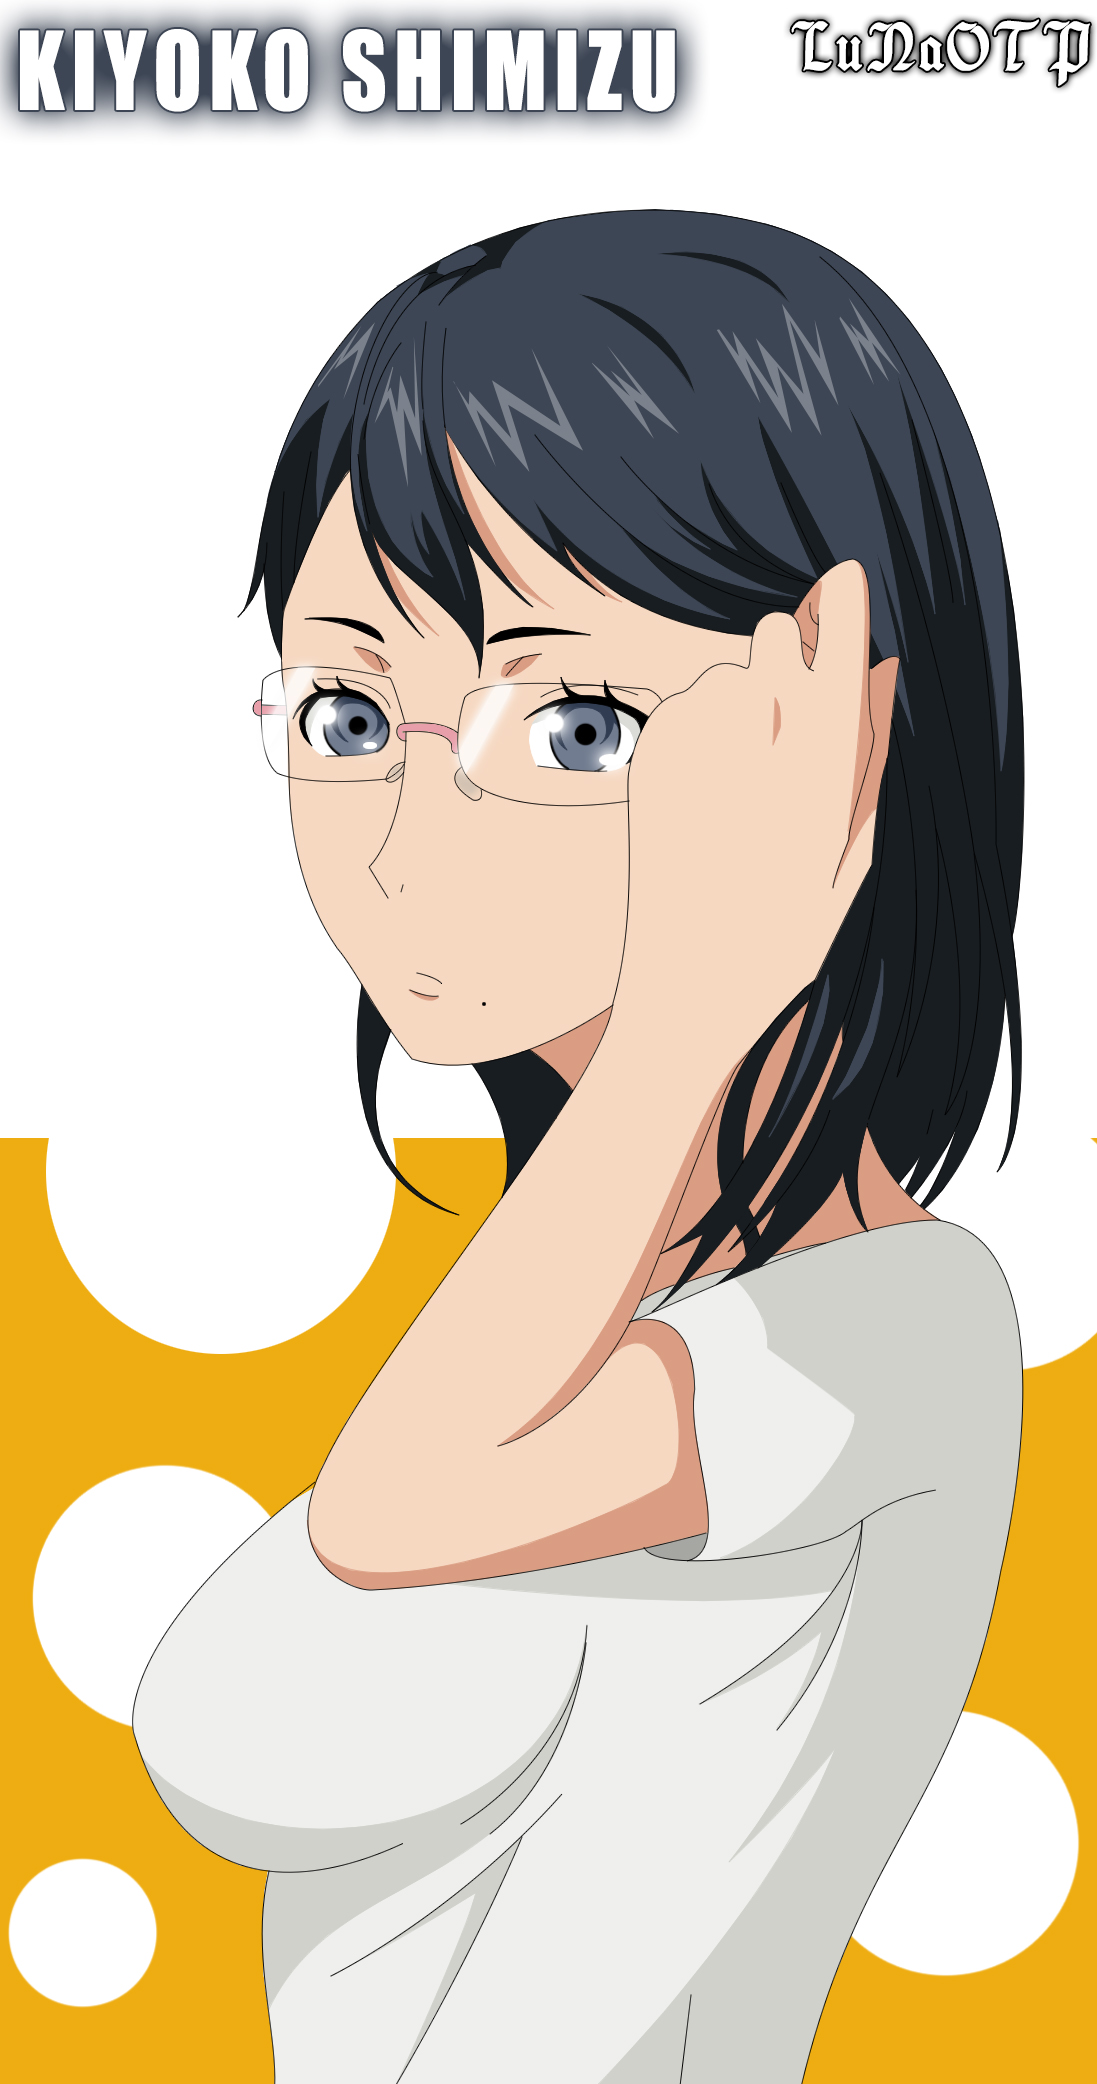 Kiyoko is the hottest girl in high school 😍 #anime #haikyuu #fyp Buy , kiyoko and hinata